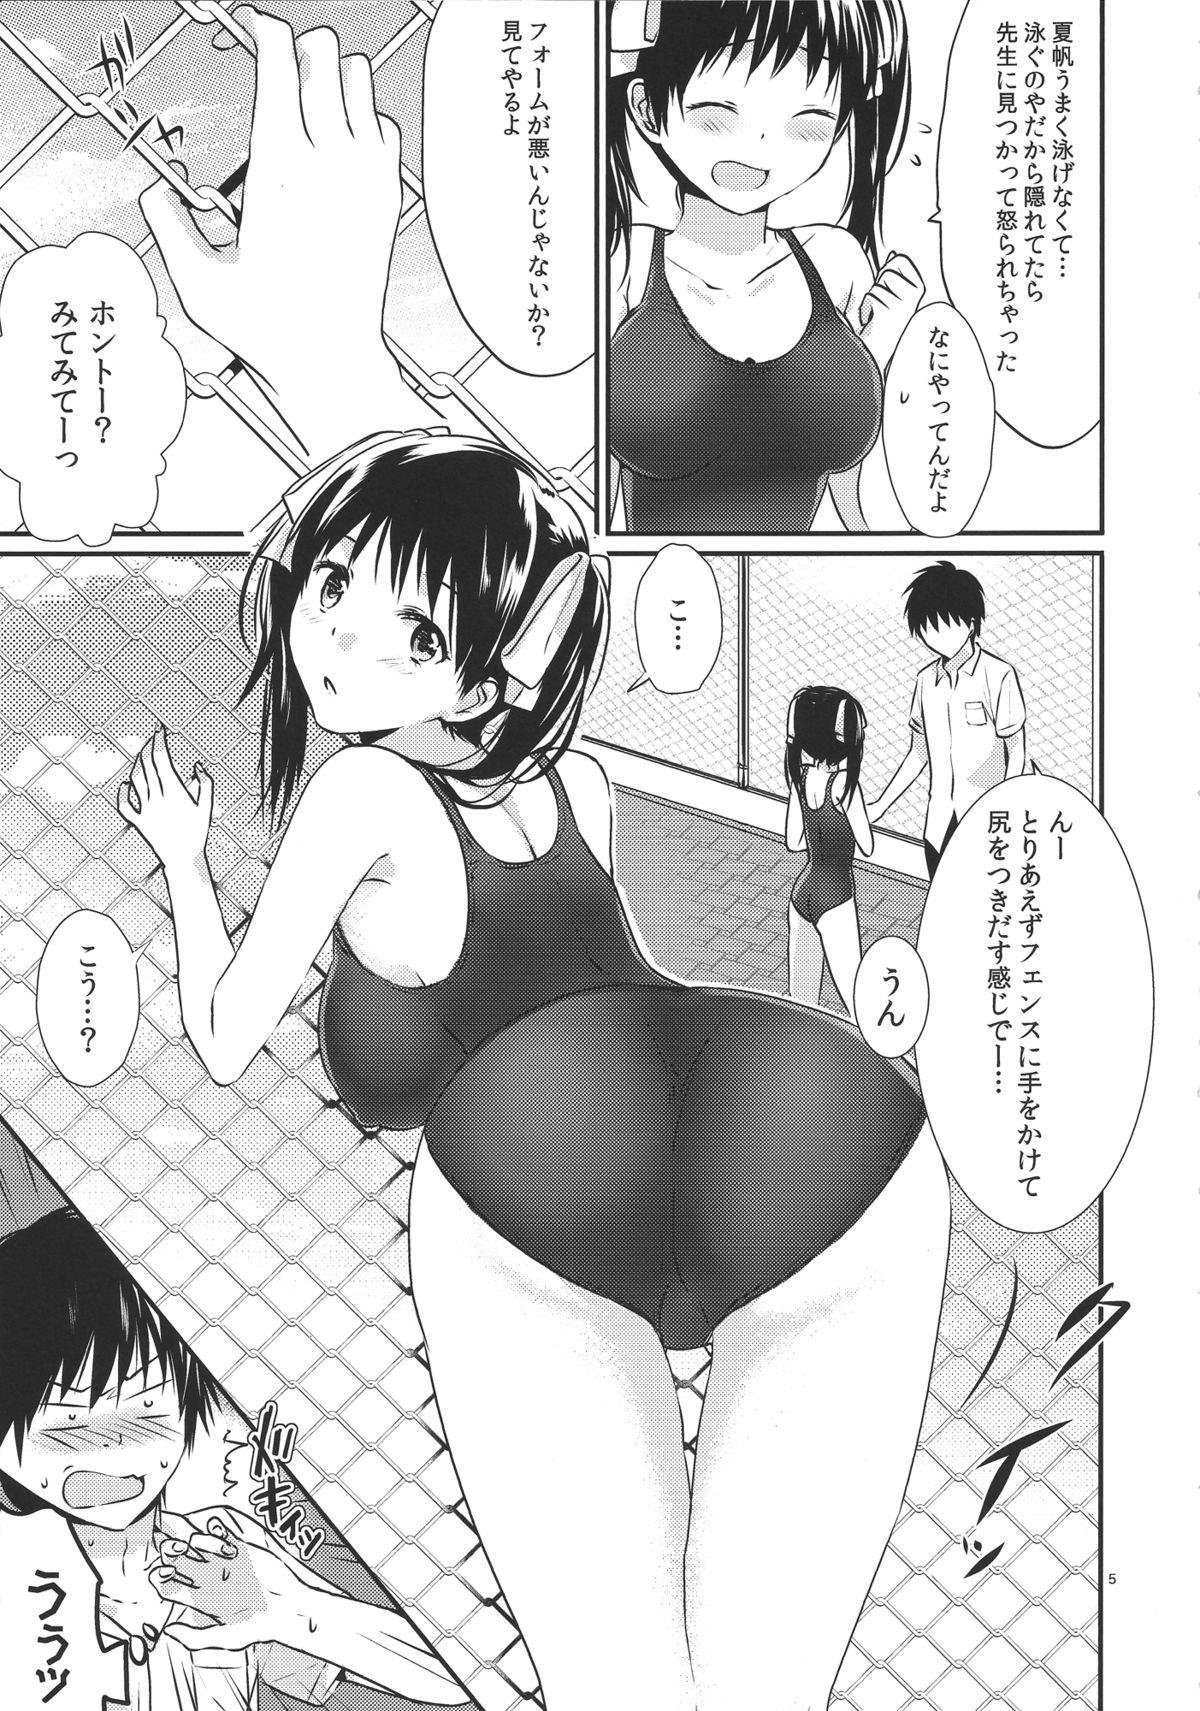 Outdoor Sex Oniichan no koto daisuki dakara sukumizu de nousatsu shite mo iiyo nee Nylons - Page 4